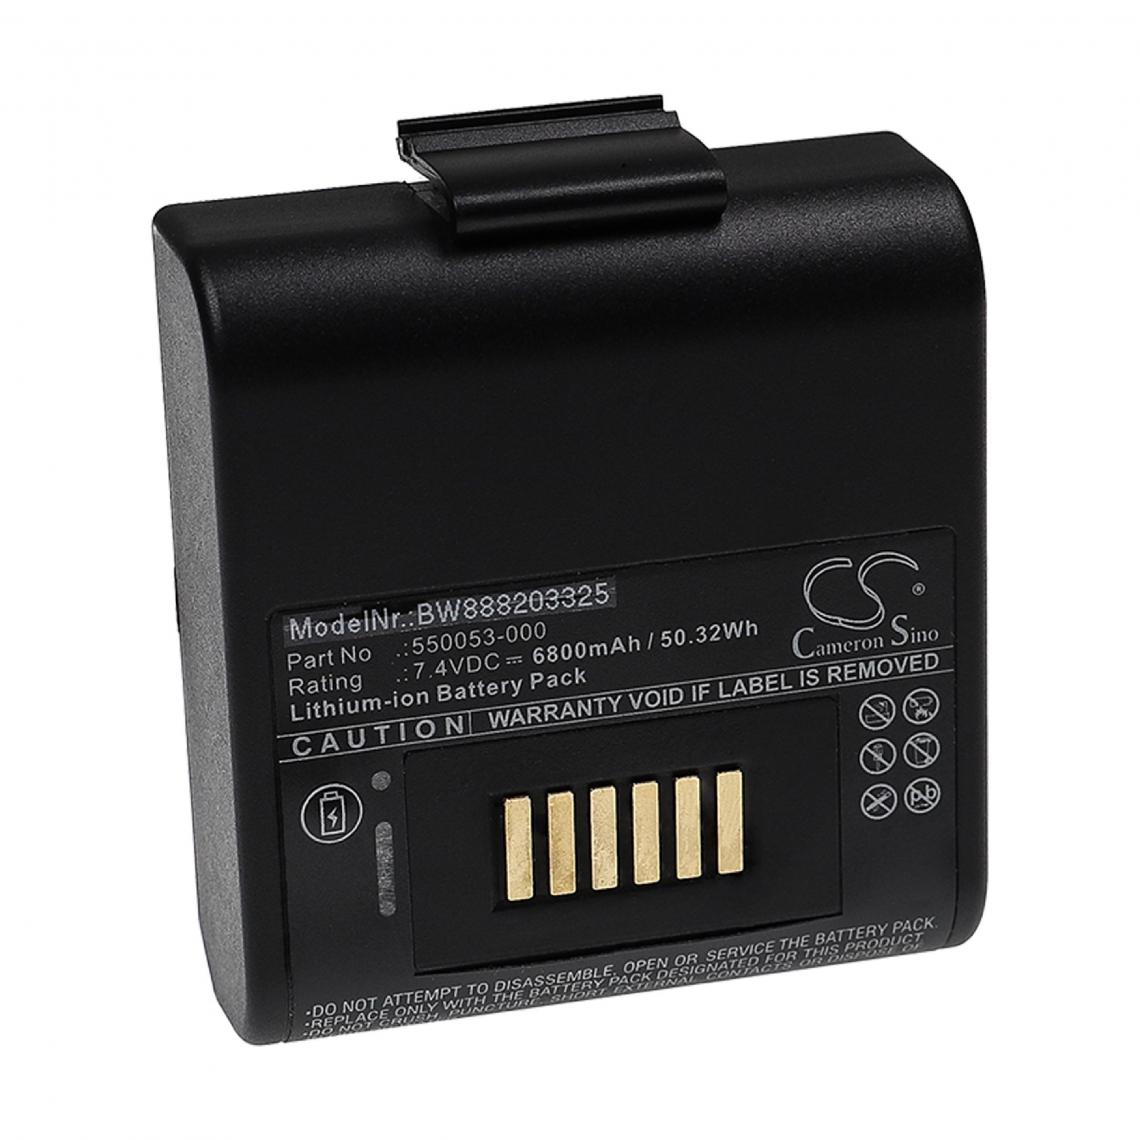 Vhbw - vhbw Batterie compatible avec Intermec RP4 imprimante, scanner, imprimante d'étiquettes (6800mAh, 7,4V, Li-ion) - Imprimante Jet d'encre